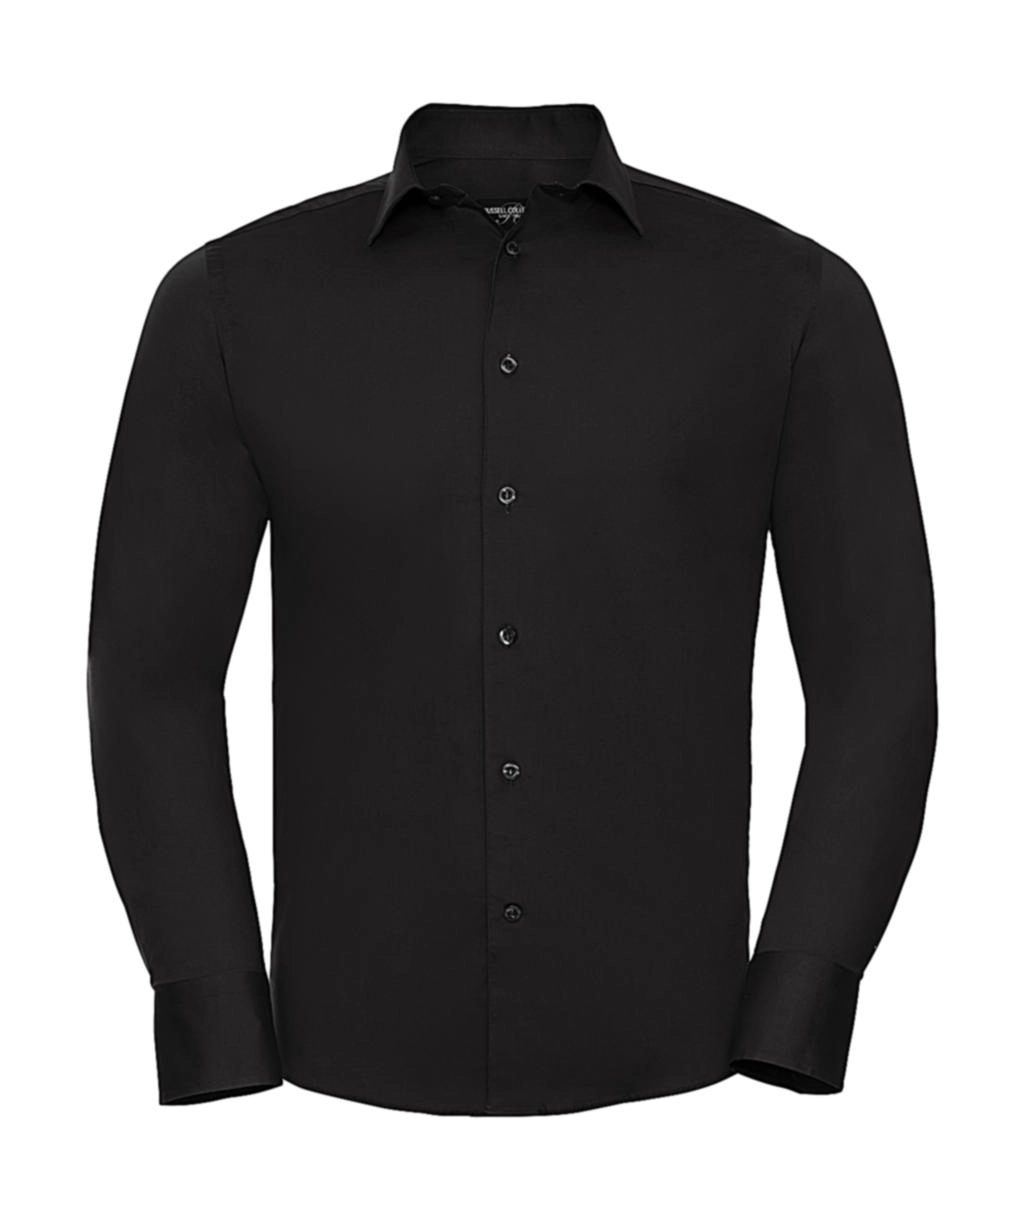 Fitted Stretch Shirt LS zum Besticken und Bedrucken in der Farbe Black mit Ihren Logo, Schriftzug oder Motiv.